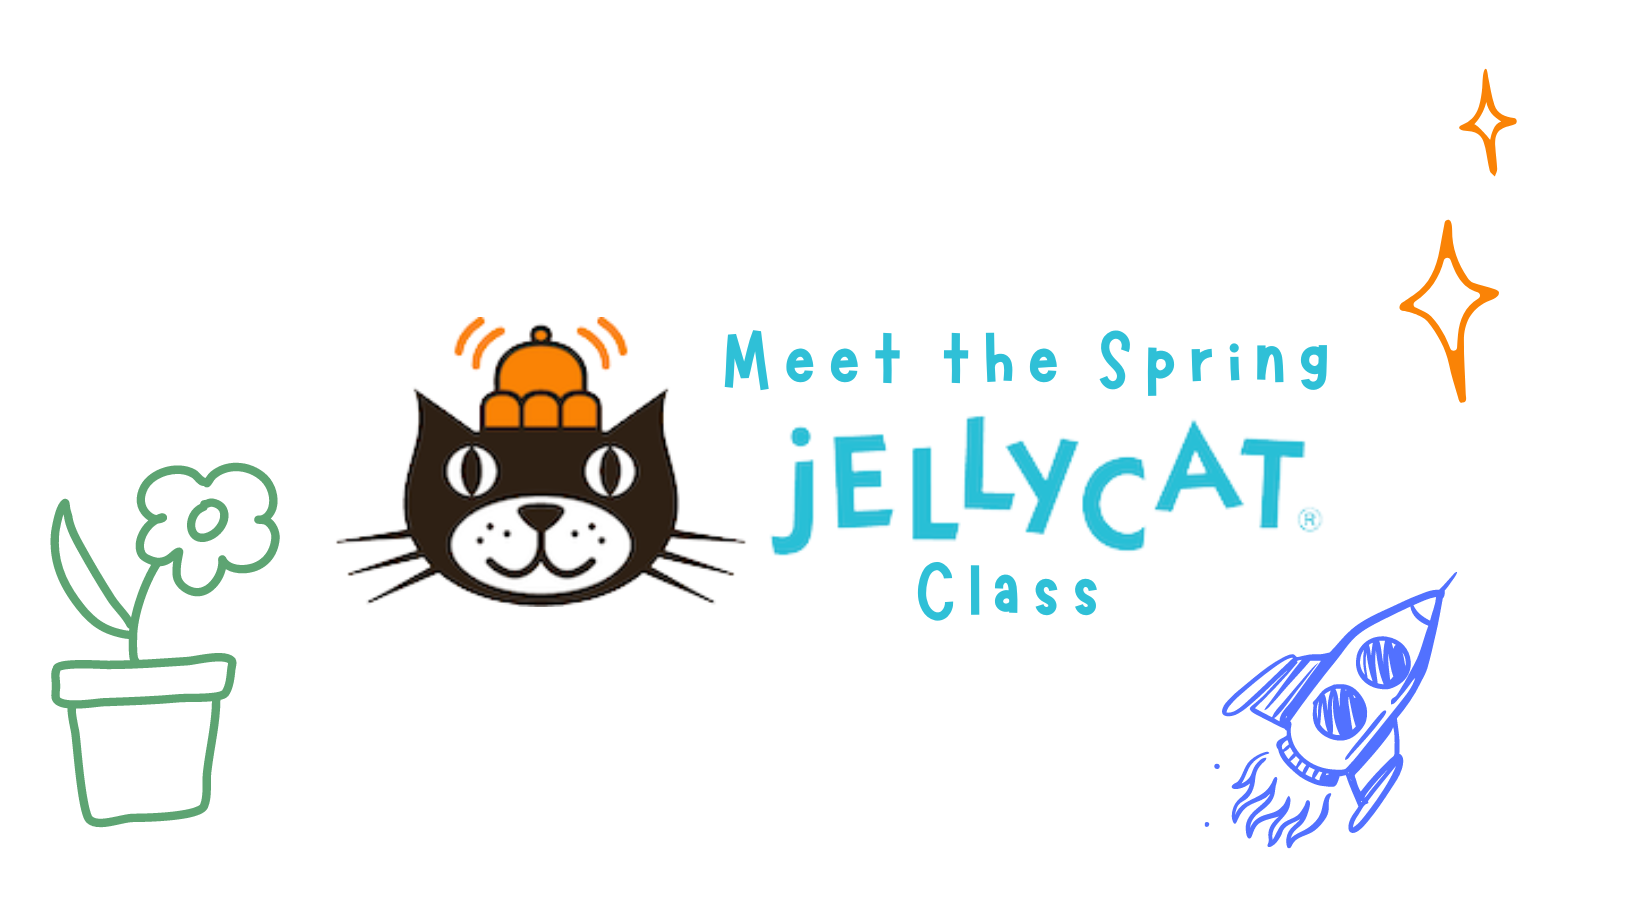 Meet the Spring Jellycat Class